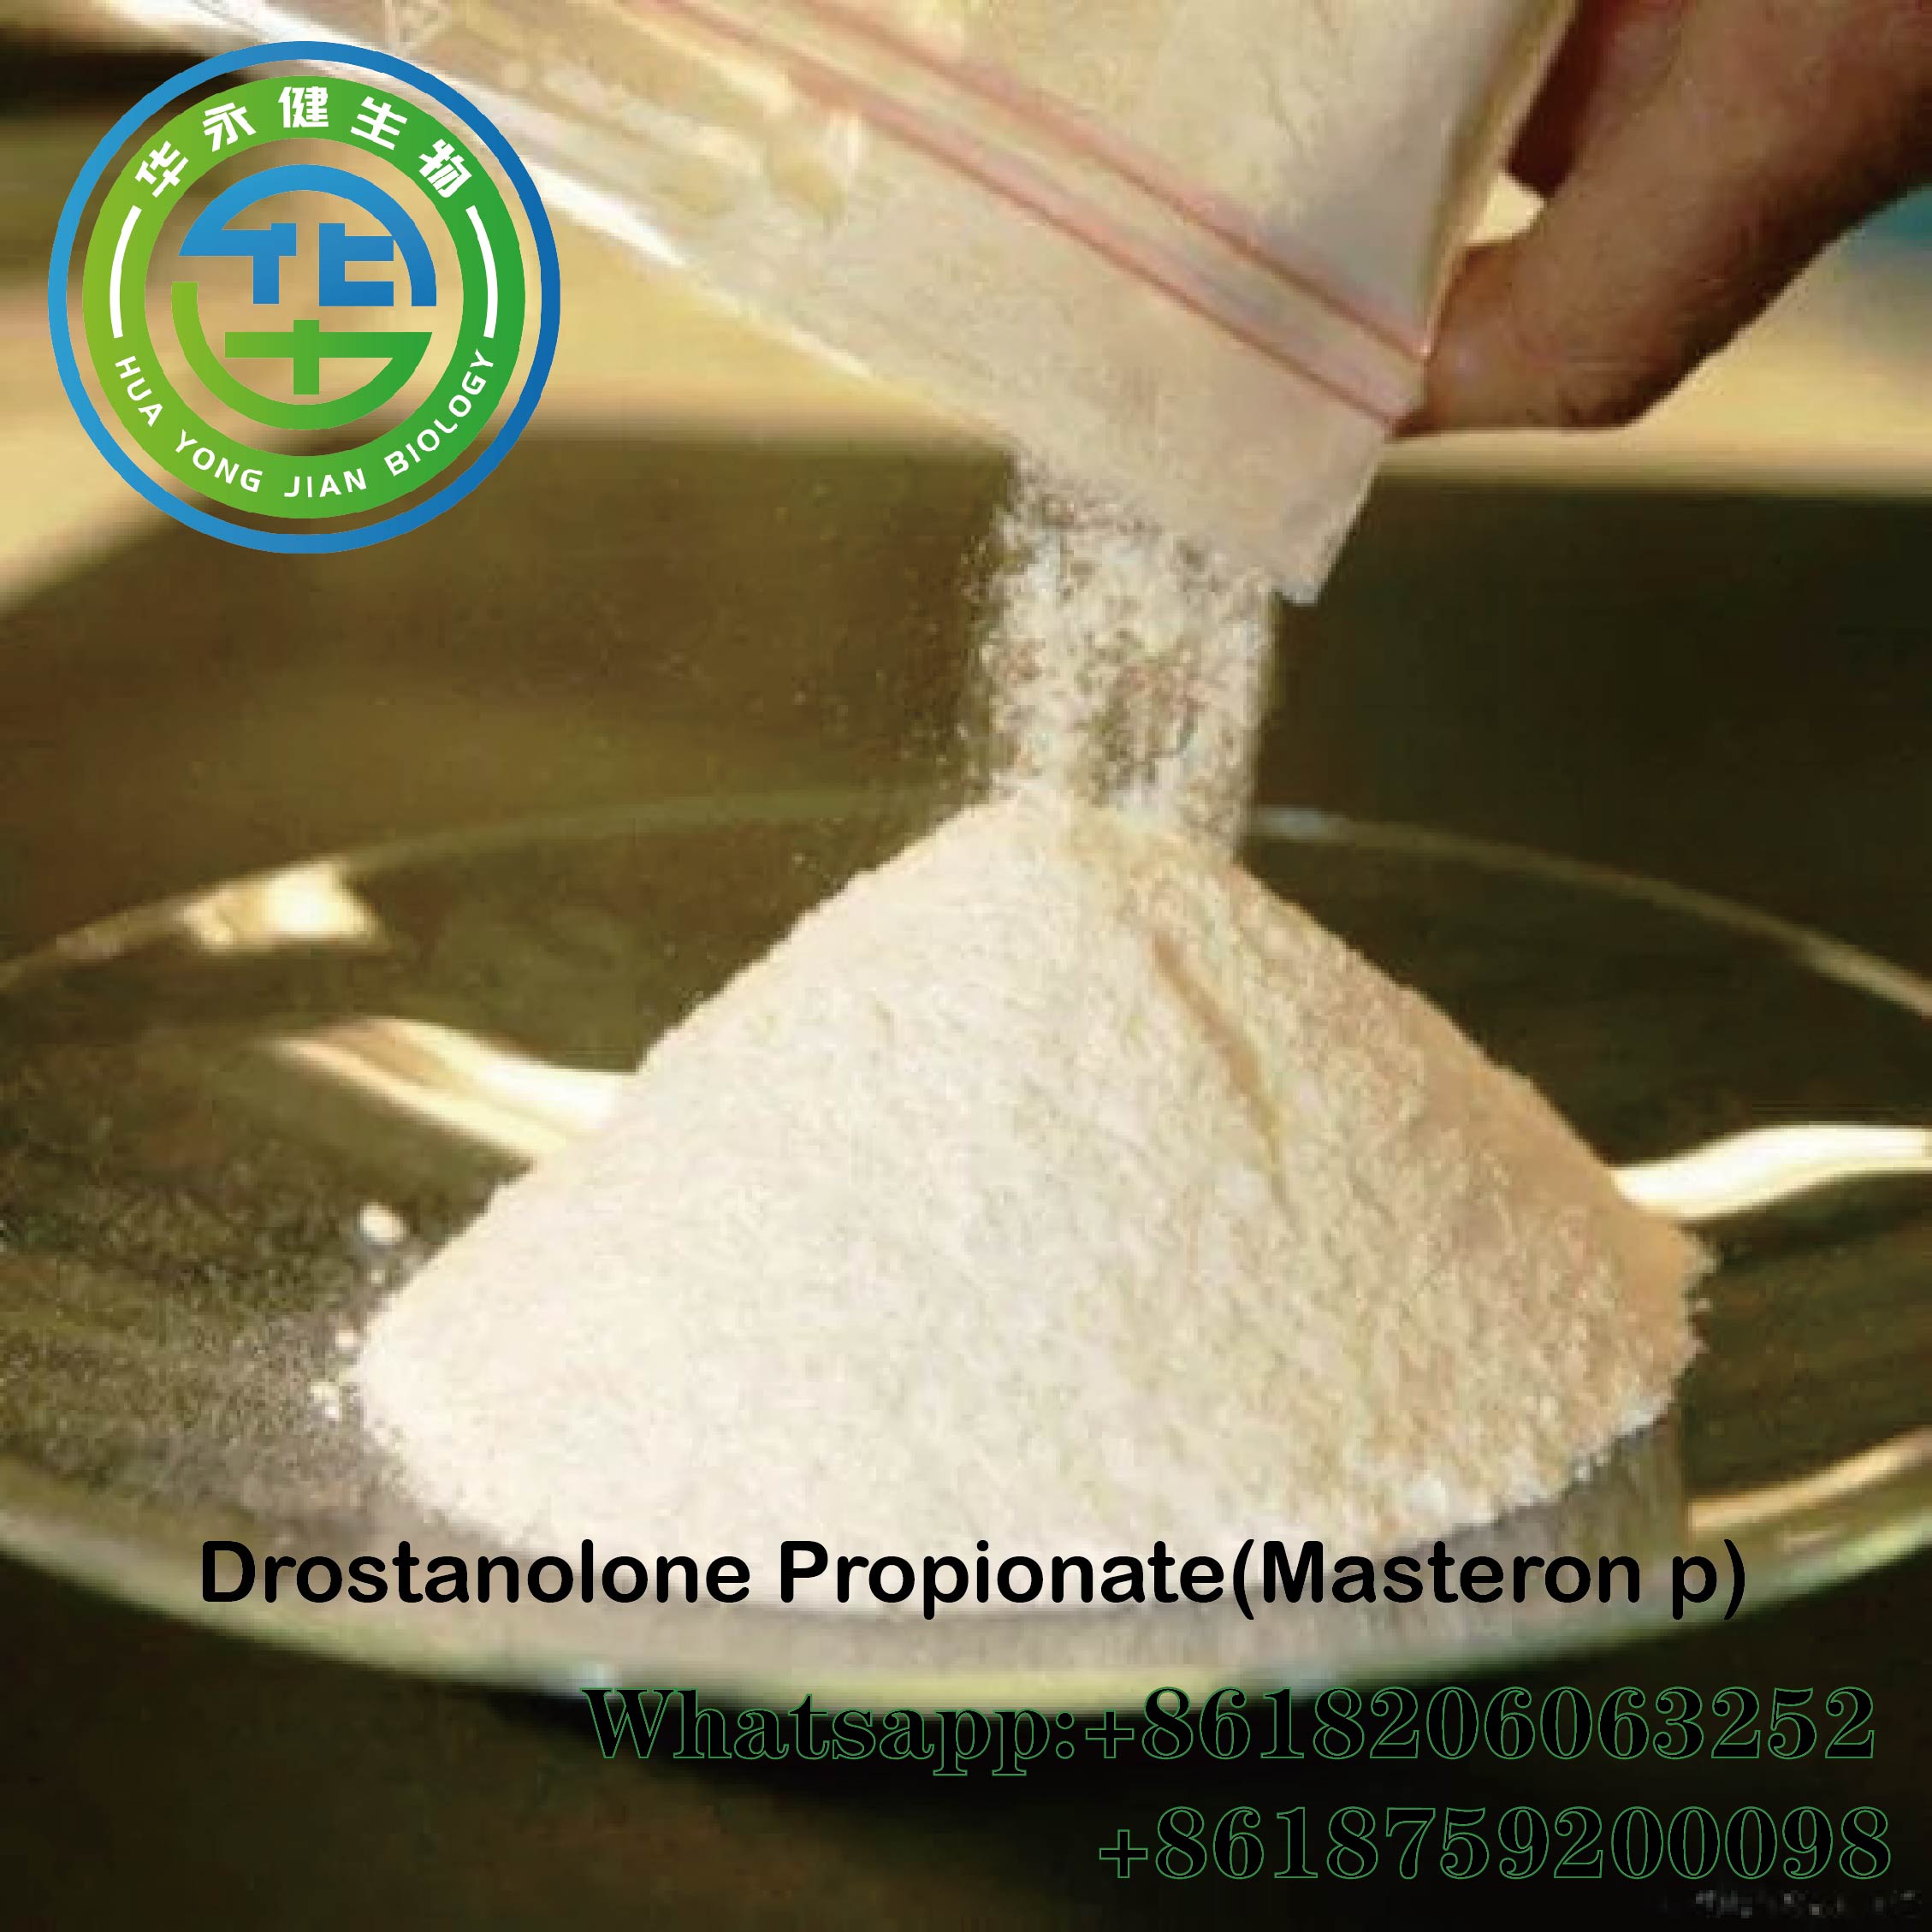 Анаболицс Дростанолоне пропионате Цас 521-12-0 сирови стероиди у праху Мастерон п са сигурном испоруком Паипал прихваћен Истакнута слика